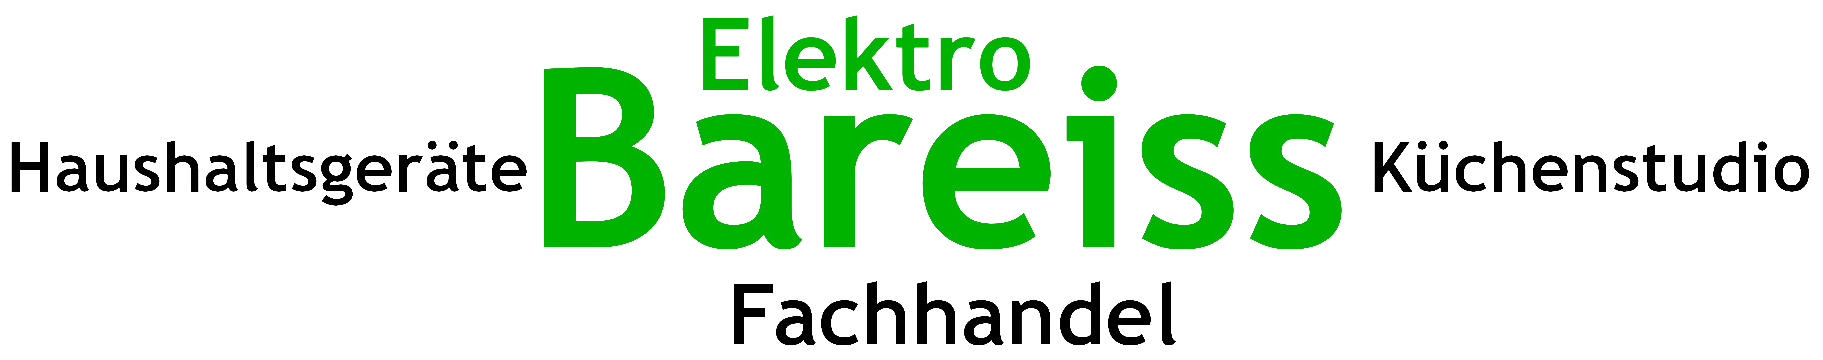 Elektro Bareiss Shop-Logo